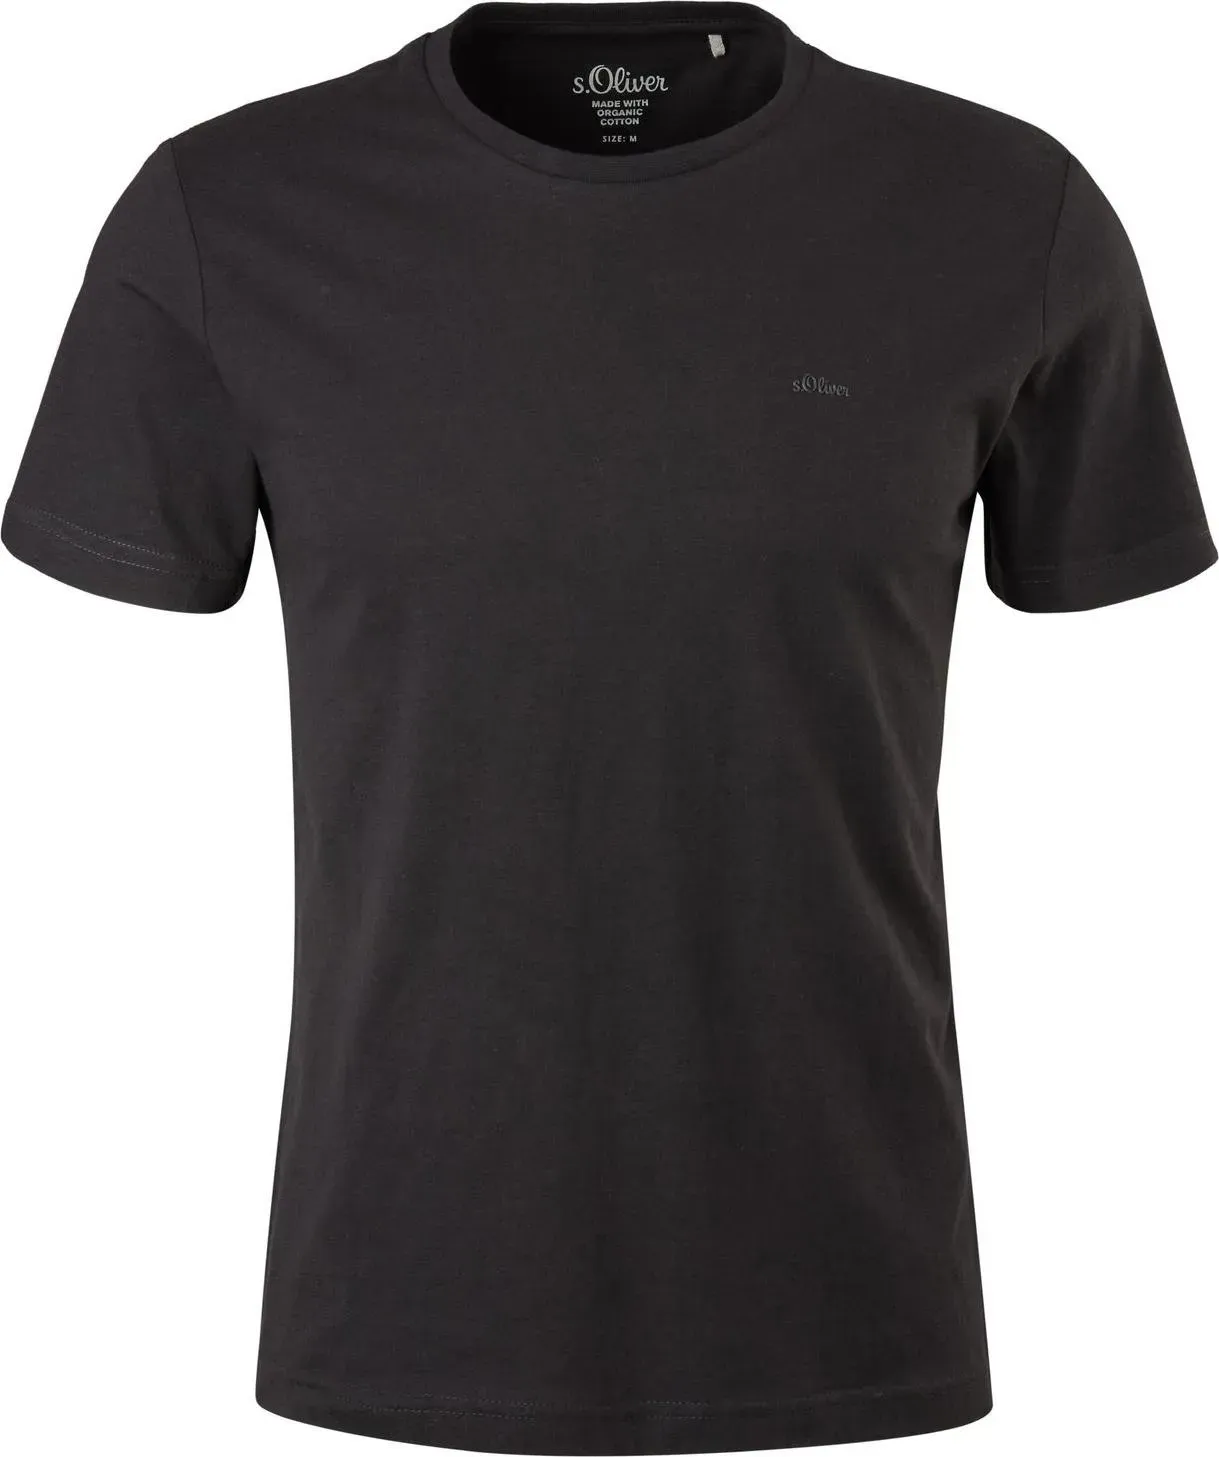 S.Oliver, Herren, Shirt, Herren T-Shirts Baumwolle Rundhals Ausschnitt Logo modern 2 Stück, Schwarz, (XL)